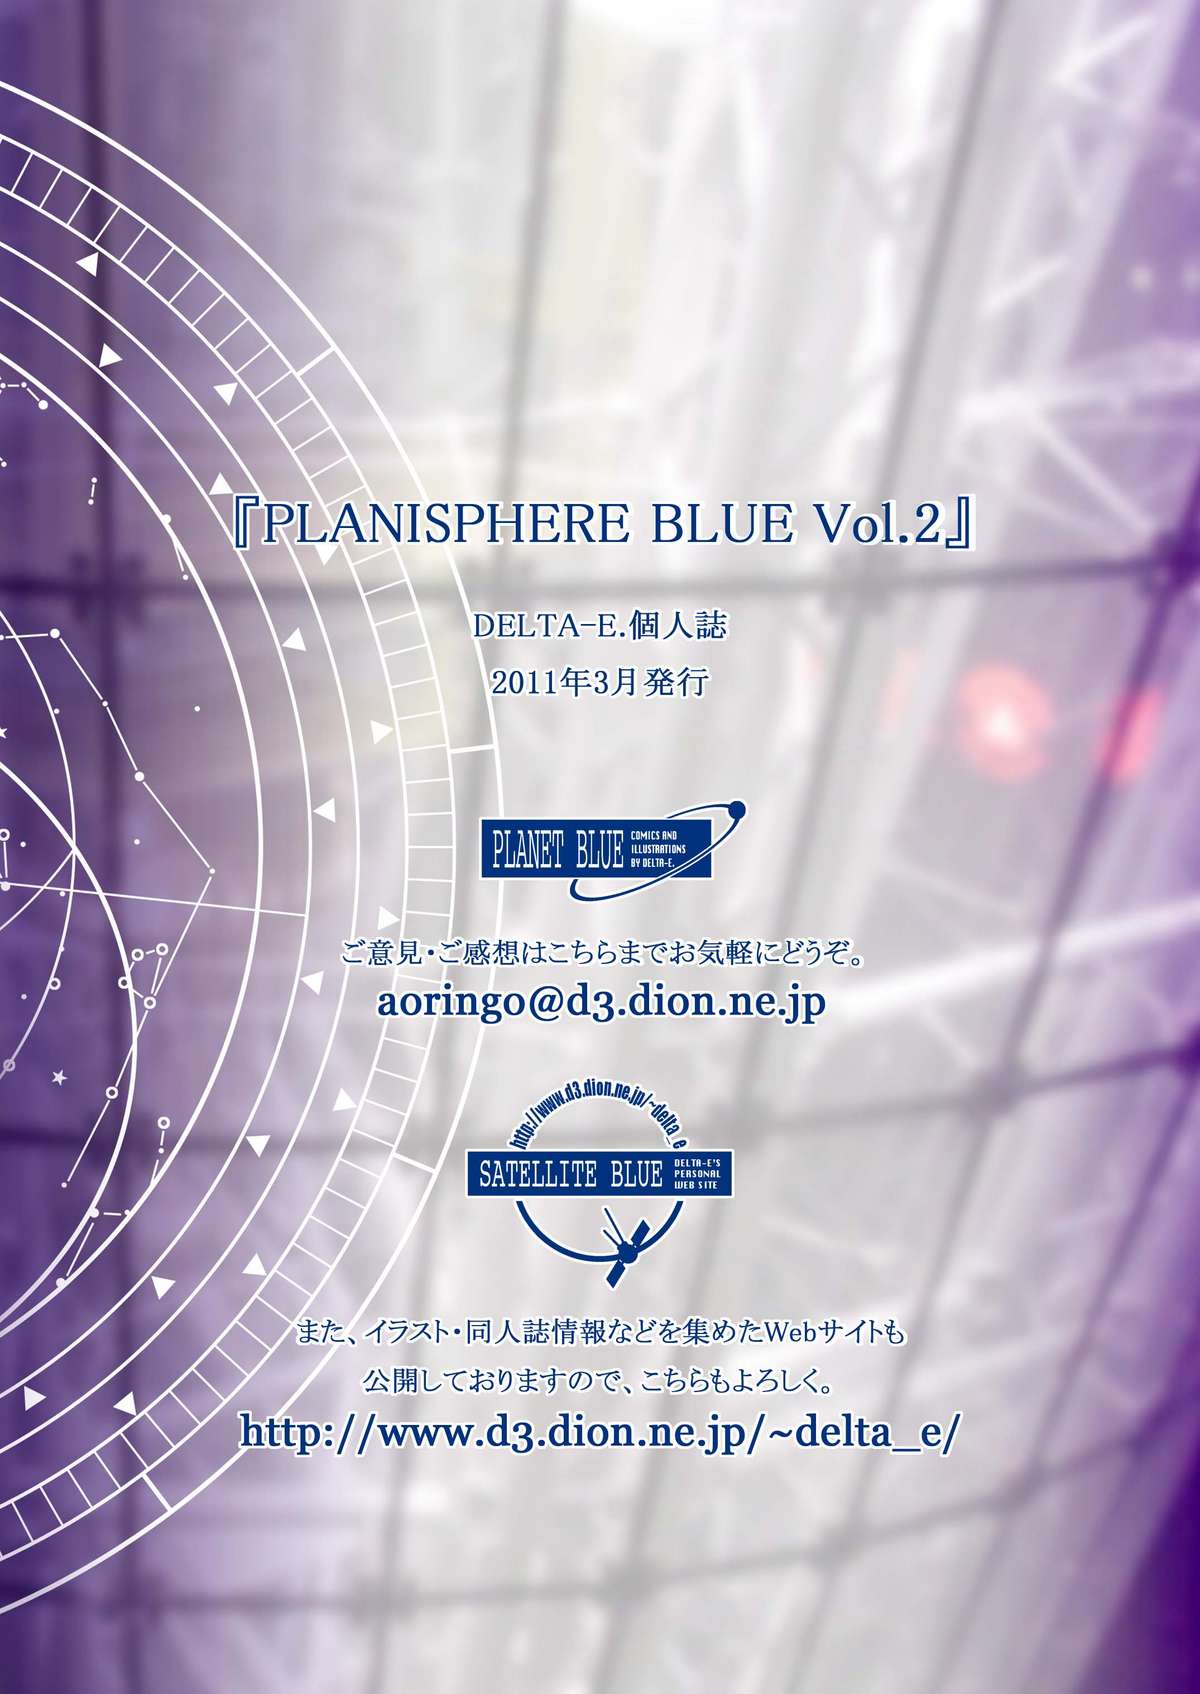 [PLANET BLUE (DELTA-E.)] PLANISPHERE BLUE Vol.2